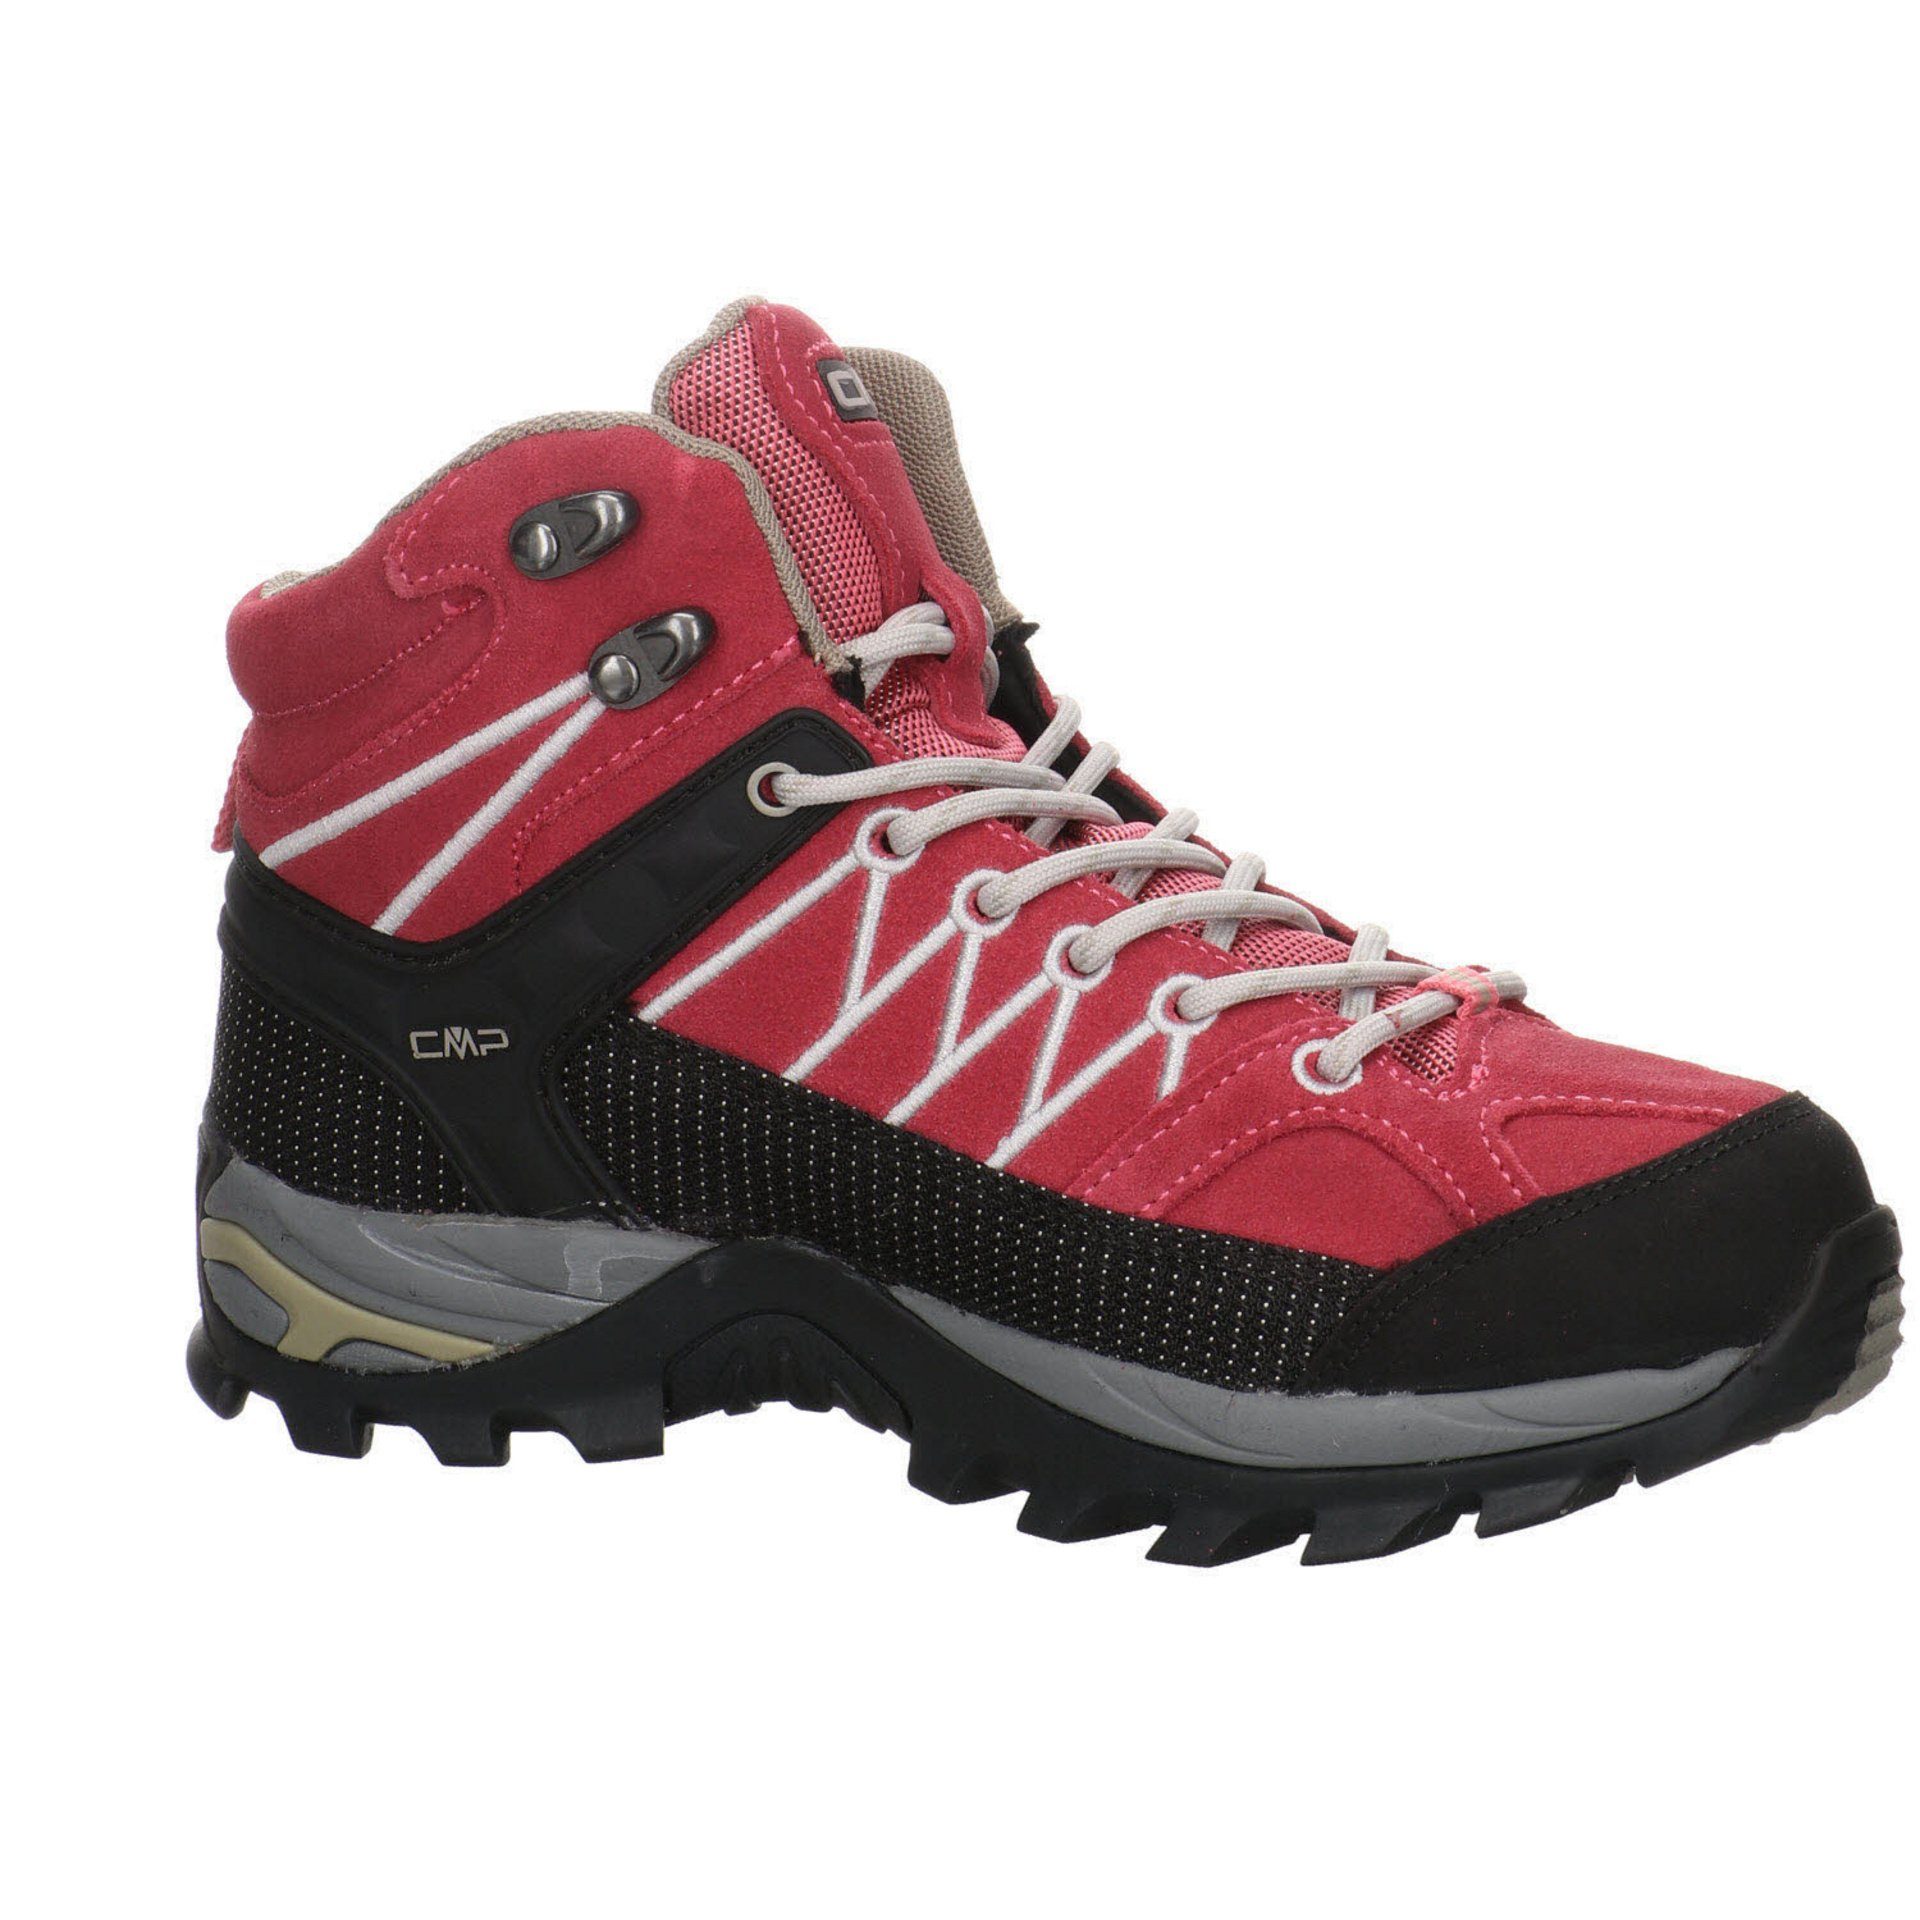 ROSE-SAND Rigel Mid Outdoorschuh Leder-/Textilkombination Schuhe Damen Outdoorschuh CMP Outdoor